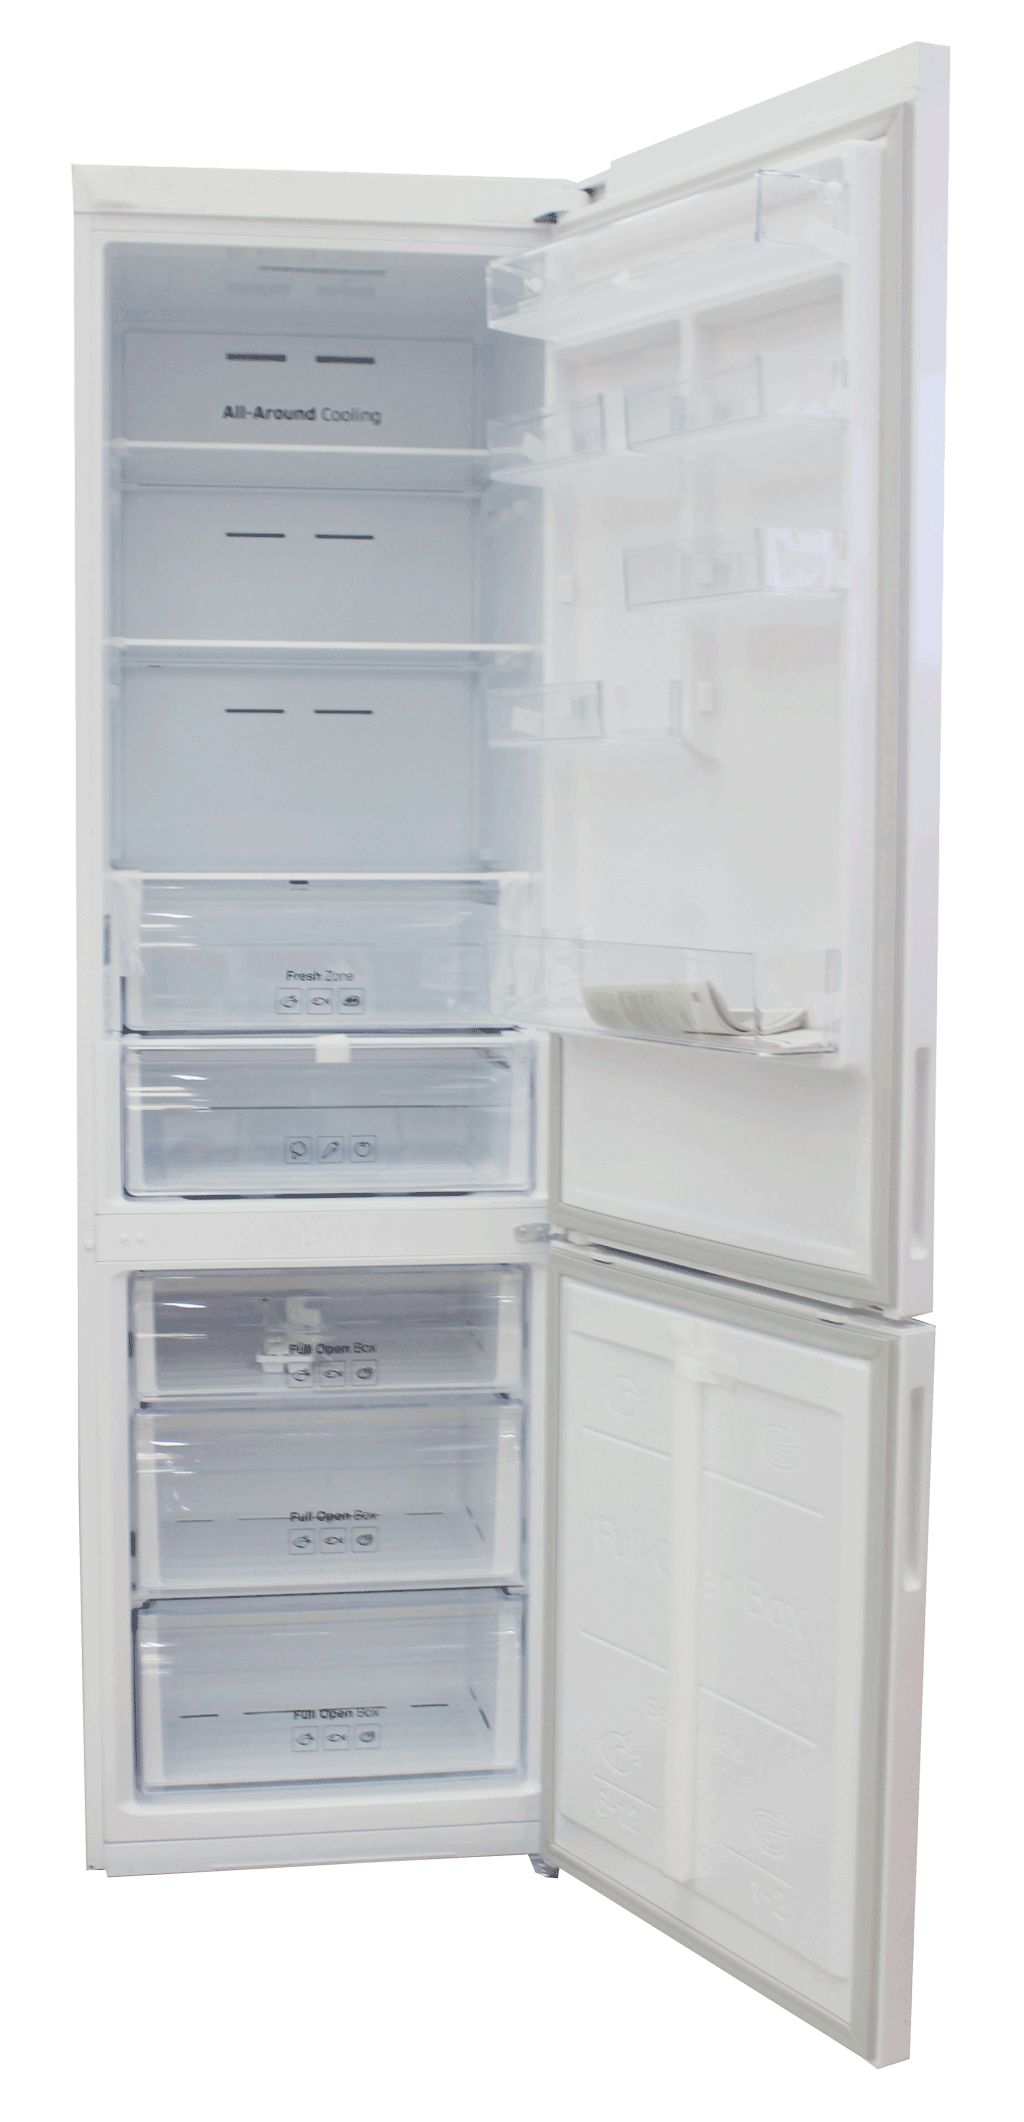 холодильник samsung rb37j5200ww, купить в Красноярске холодильник samsung rb37j5200ww,  купить в Красноярске дешево холодильник samsung rb37j5200ww, купить в Красноярске минимальной цене холодильник samsung rb37j5200ww